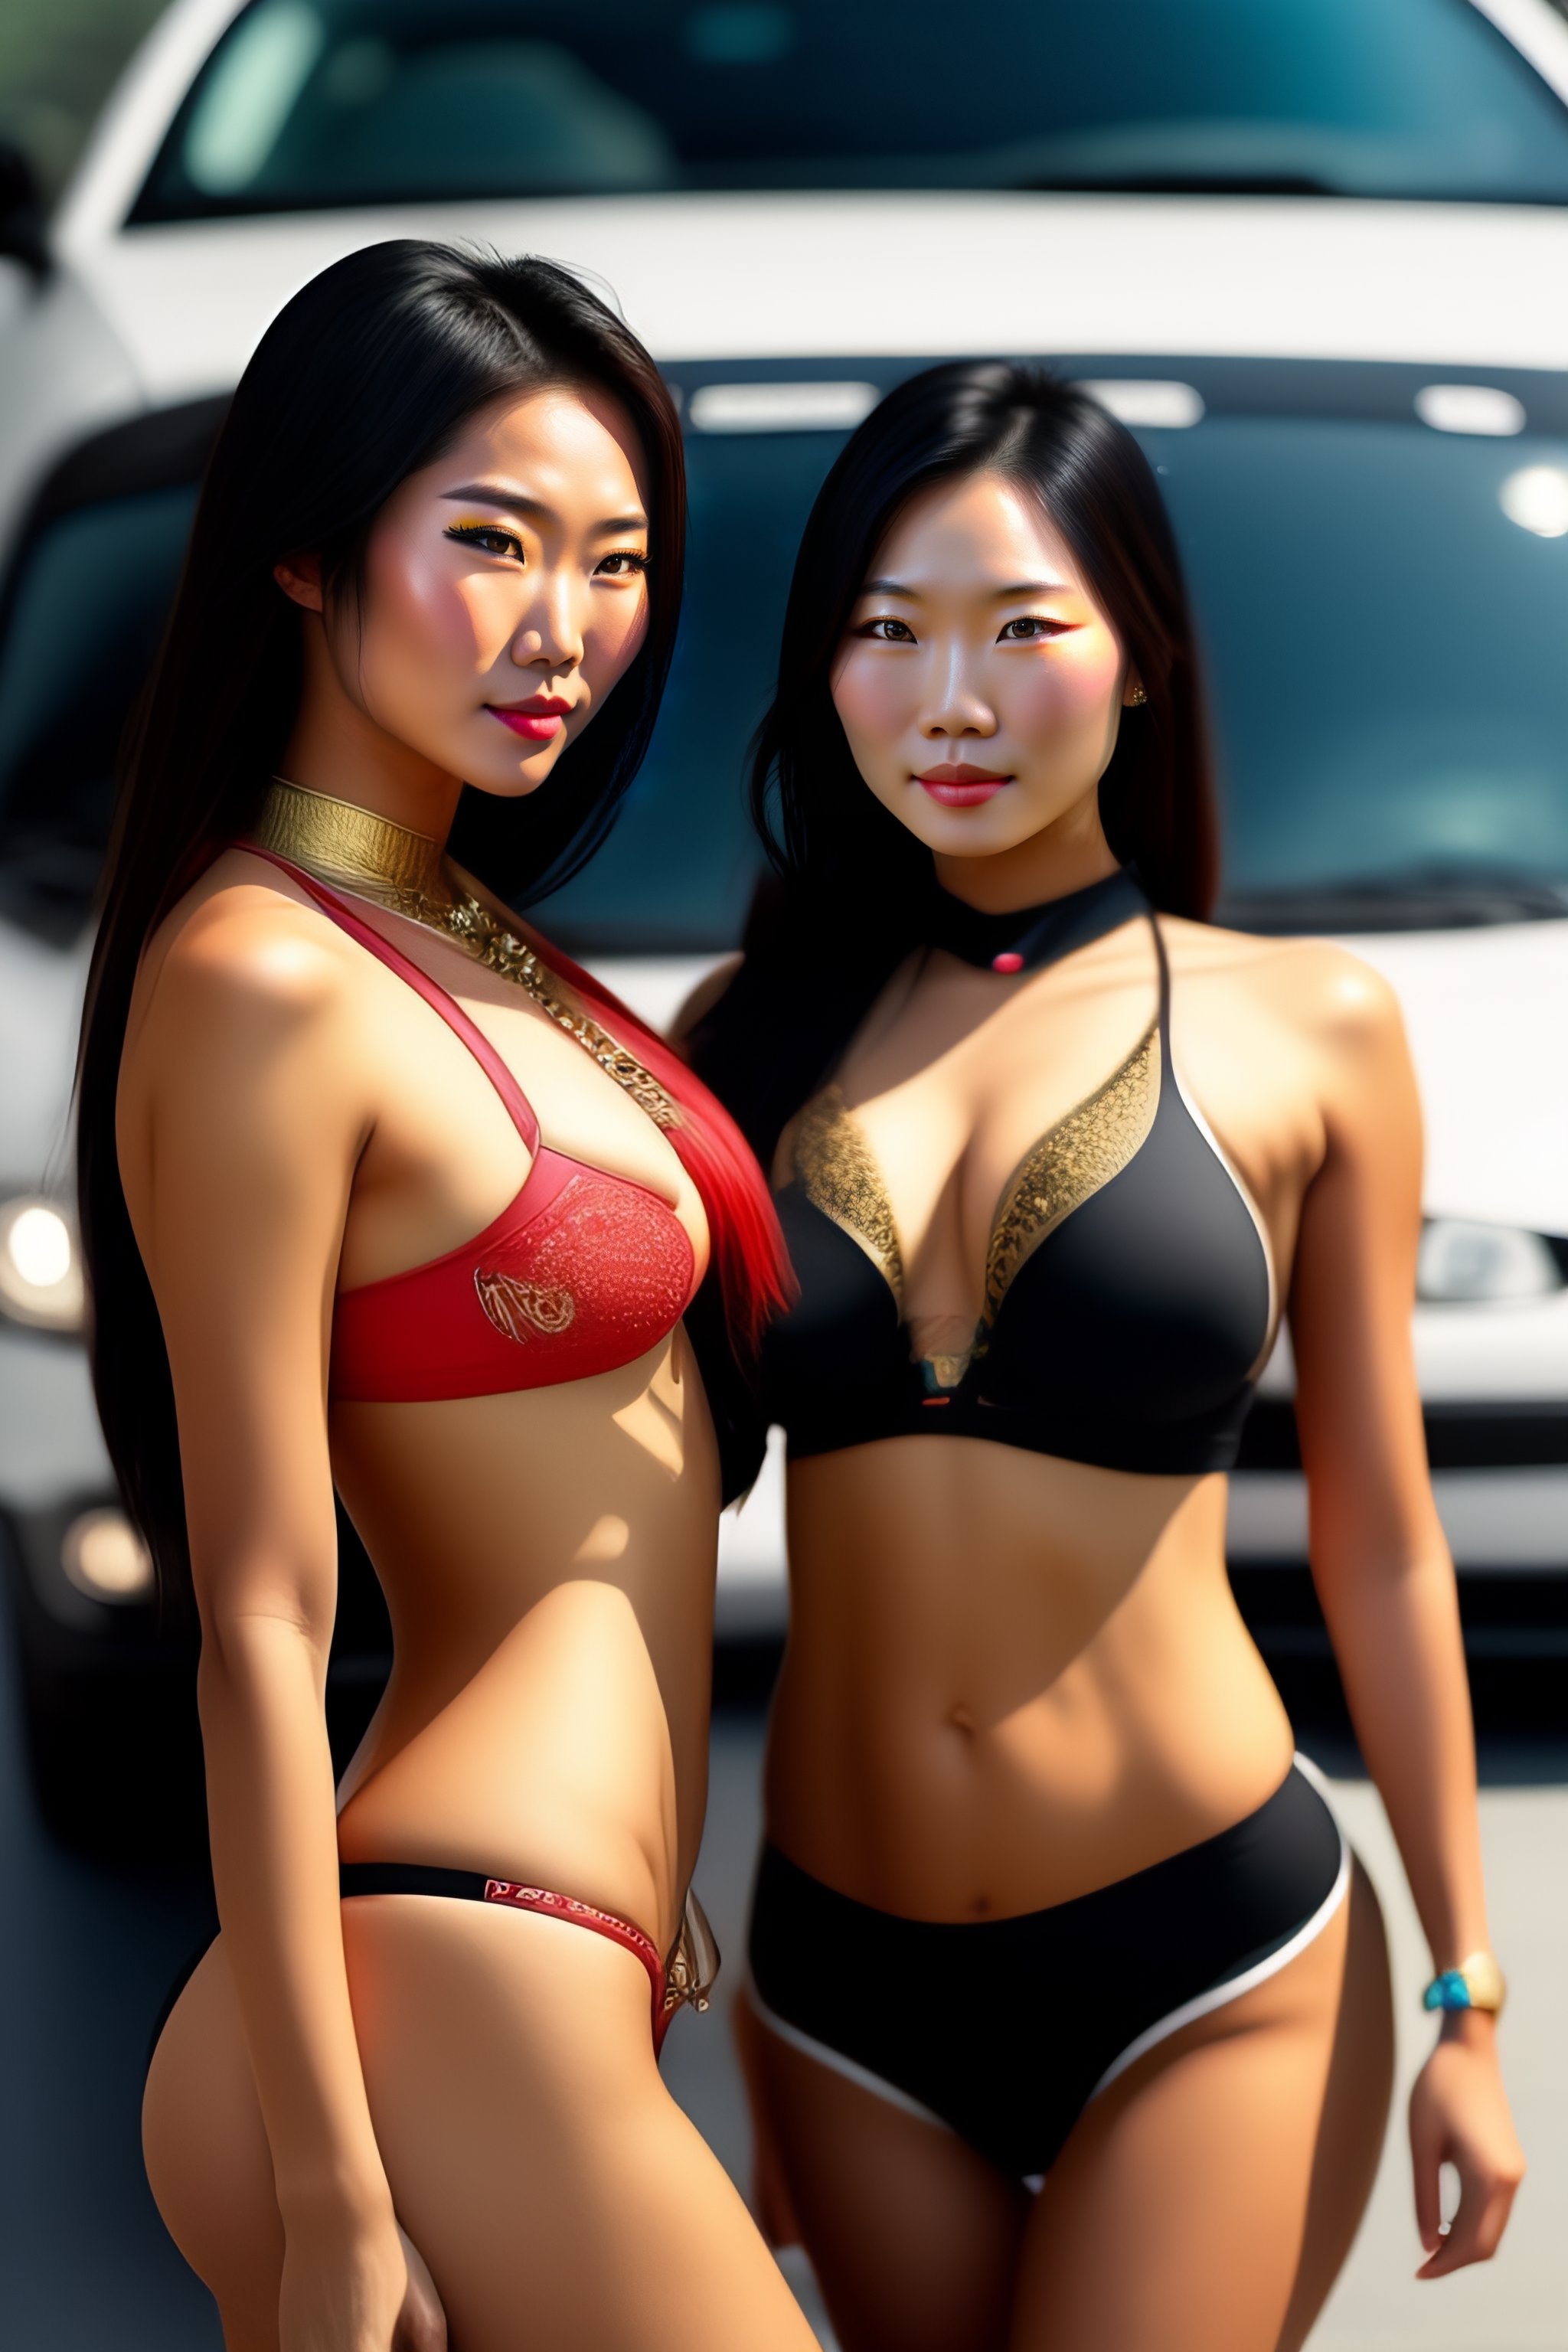 andre sunaryo add photo hot asians in bikinis